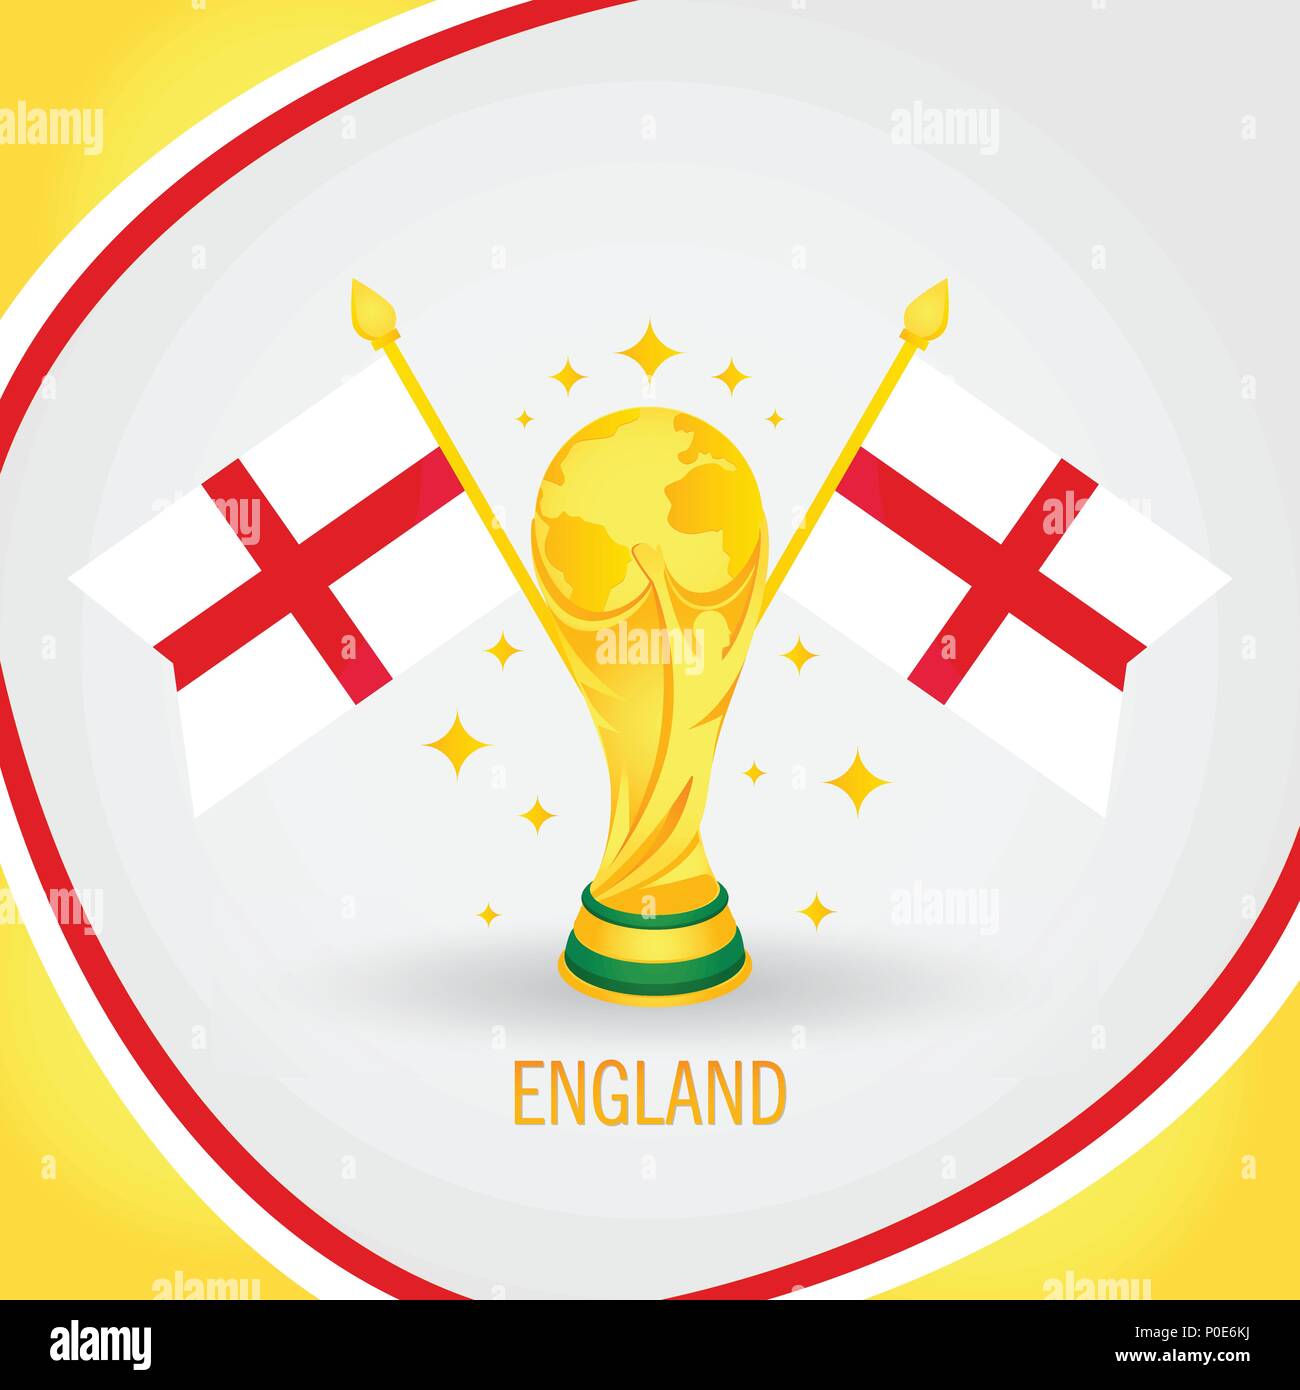 England Football Campione Coppa del Mondo 2018 - Bandiera e Golden Trophy Illustrazione Vettoriale